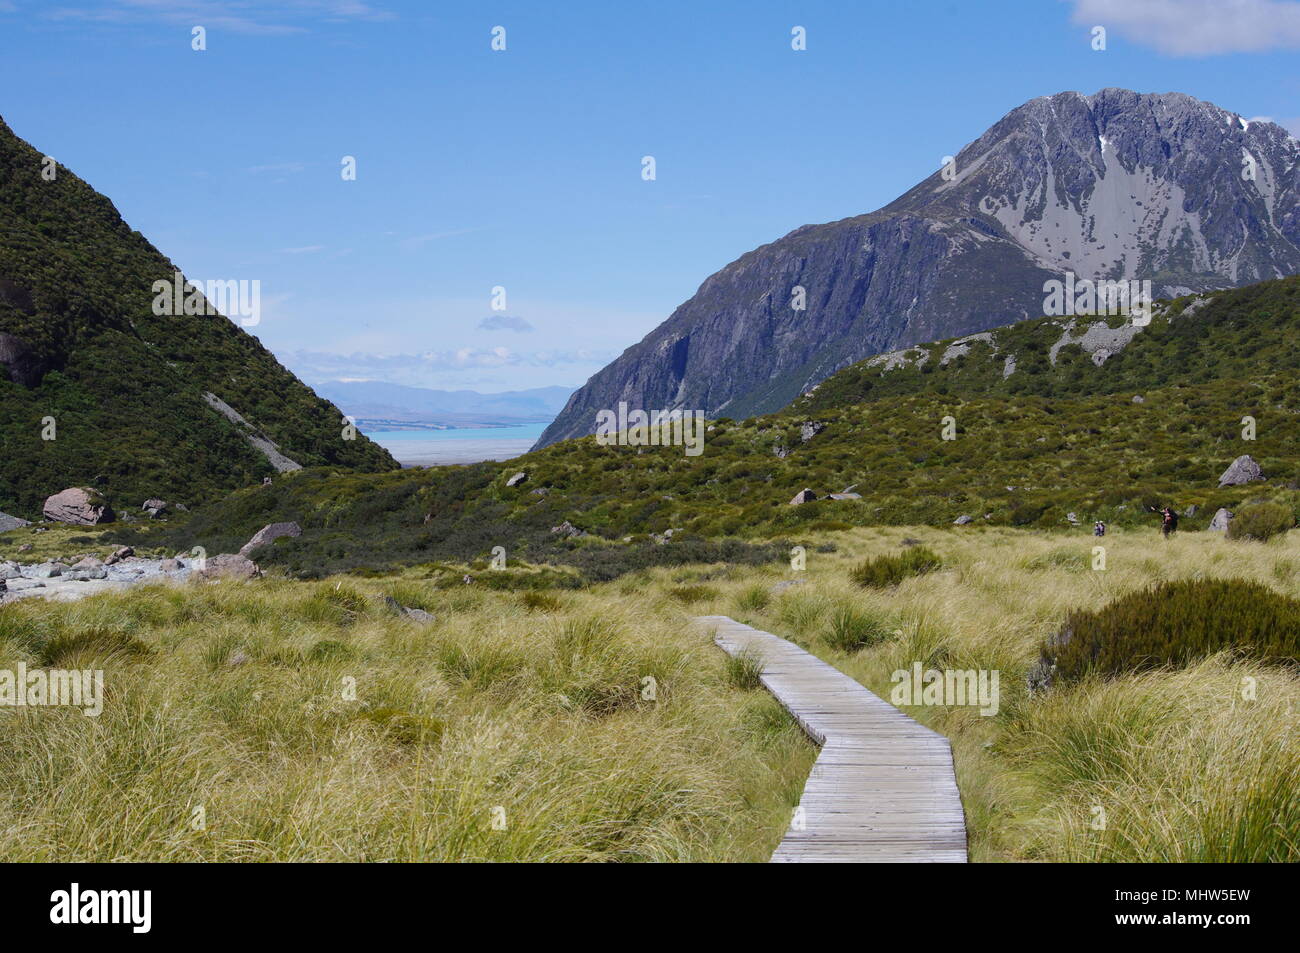 New Zealand Hooker Valley rocky mountain landscape boardwalk track Stock Photo